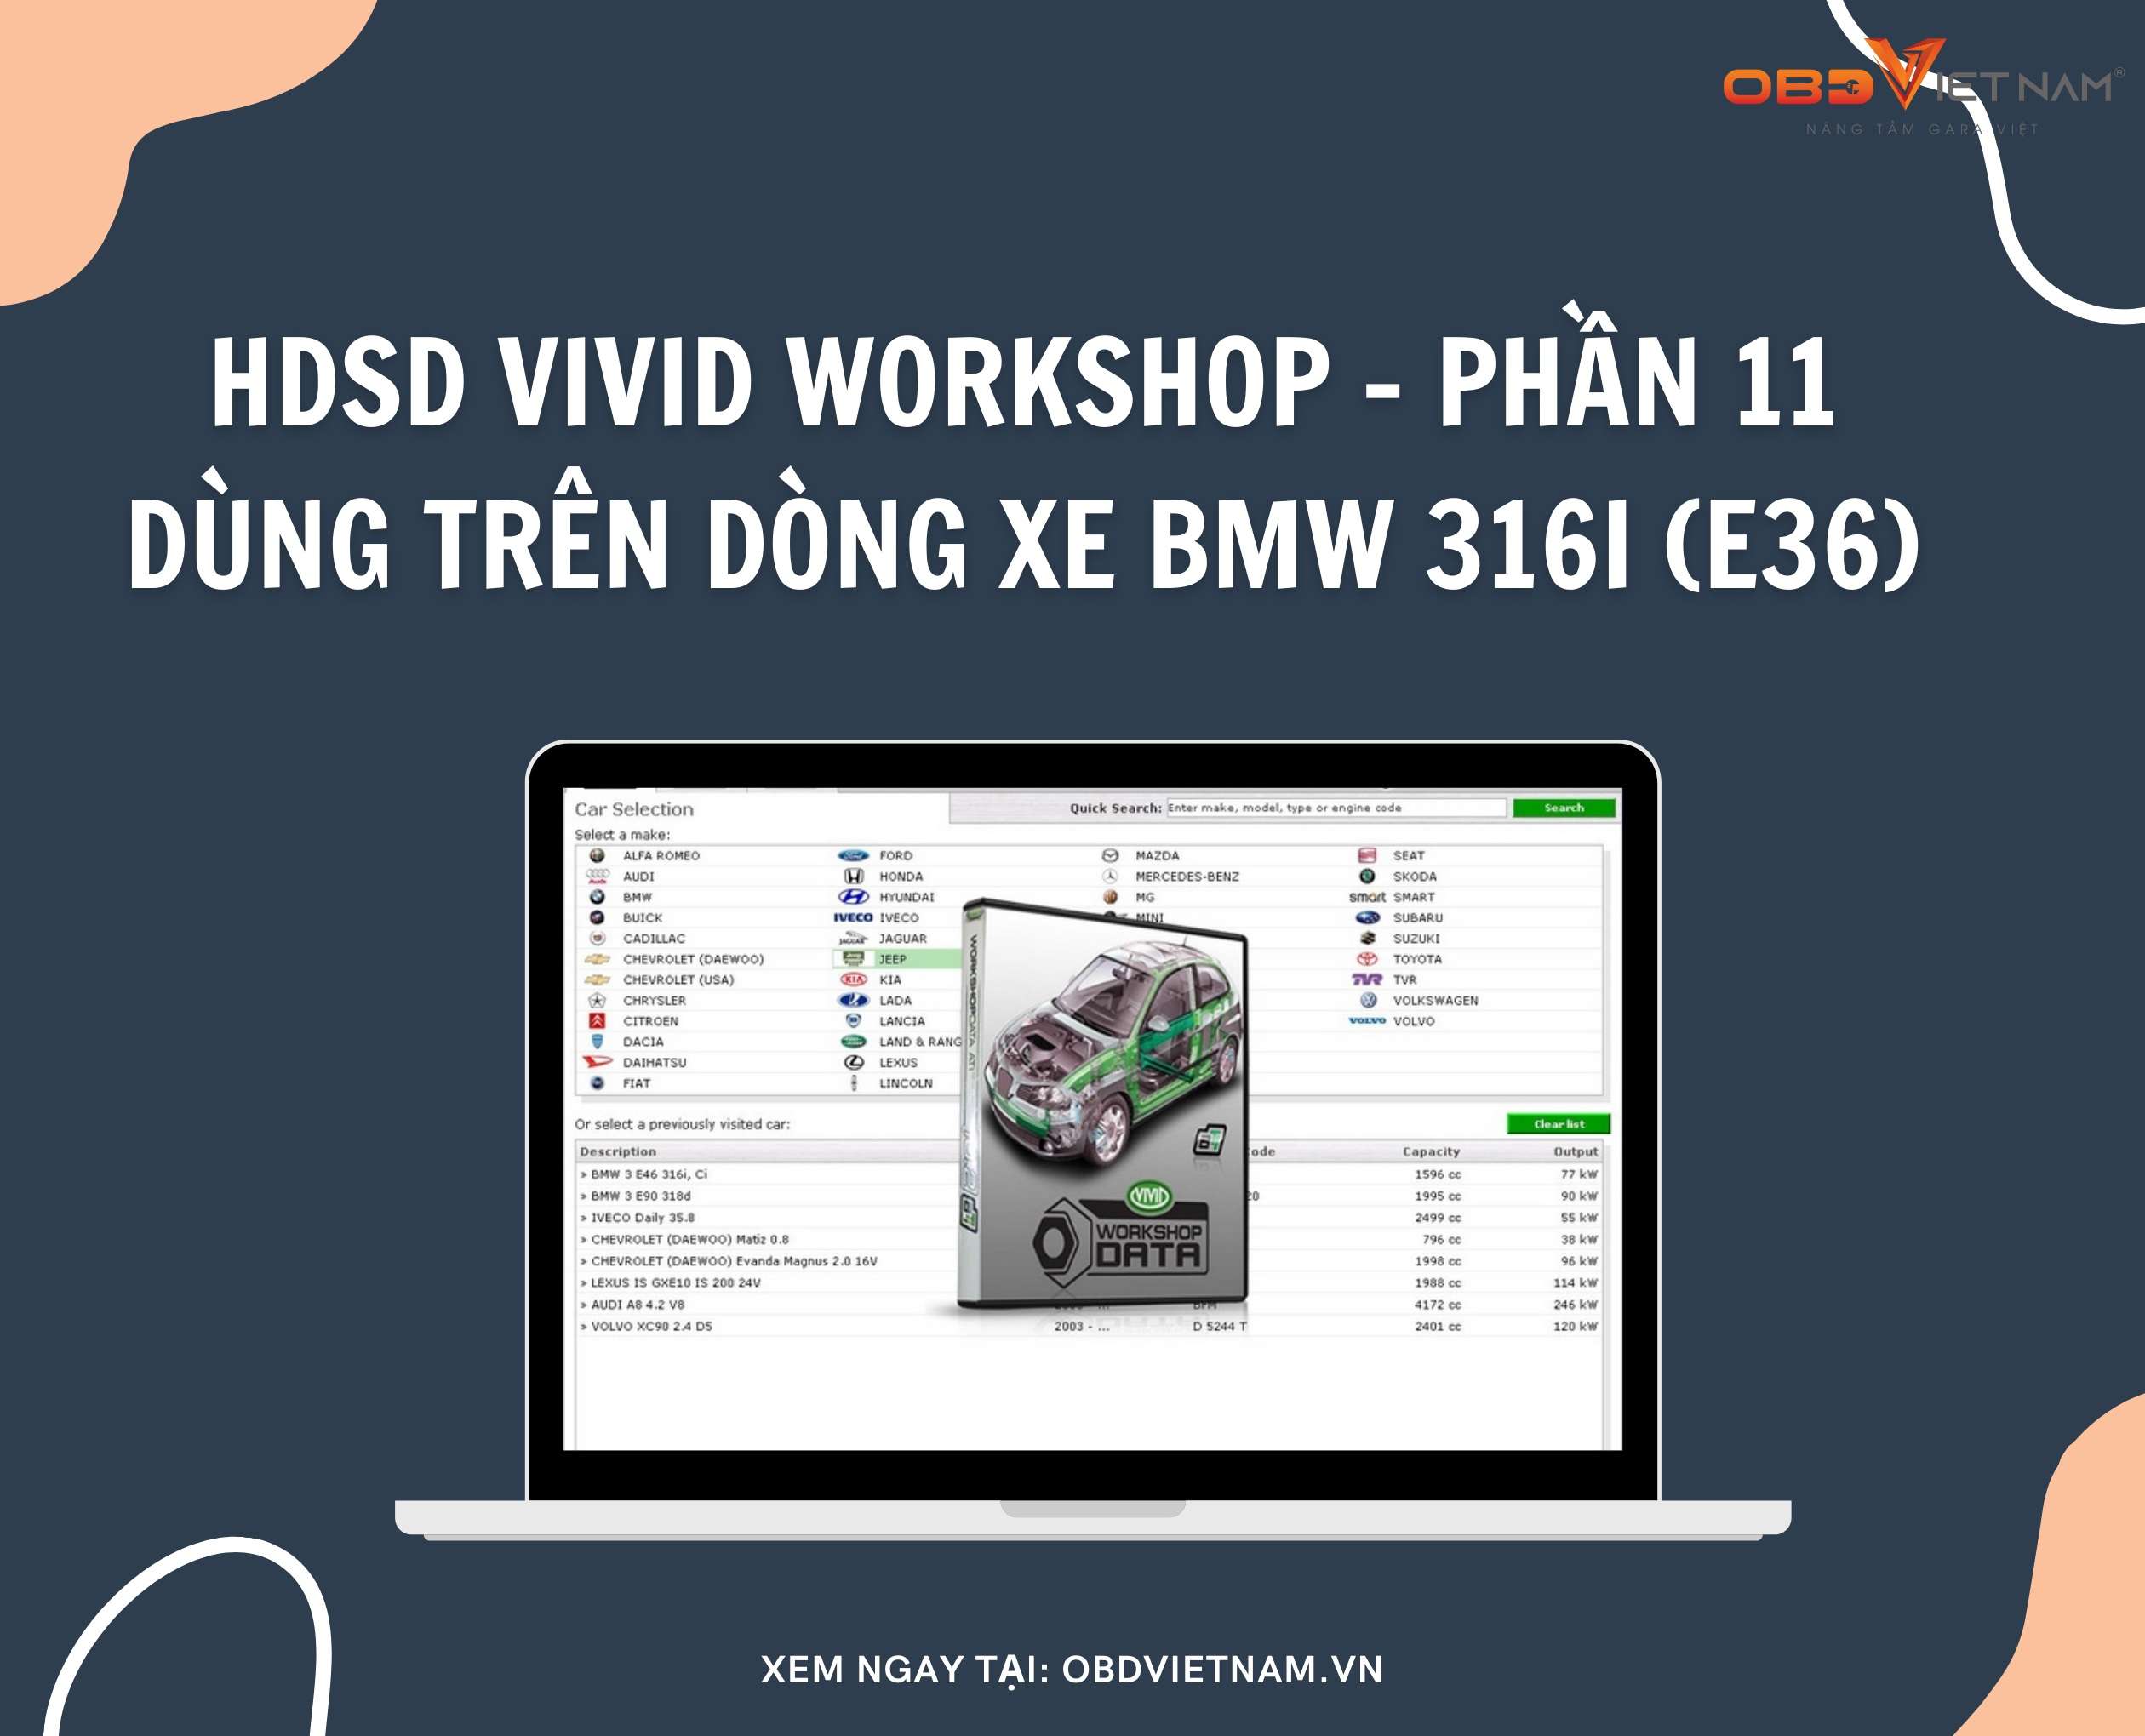 phan-mem-tra-cuu-vivid-workshop-obd-viet-nam-11